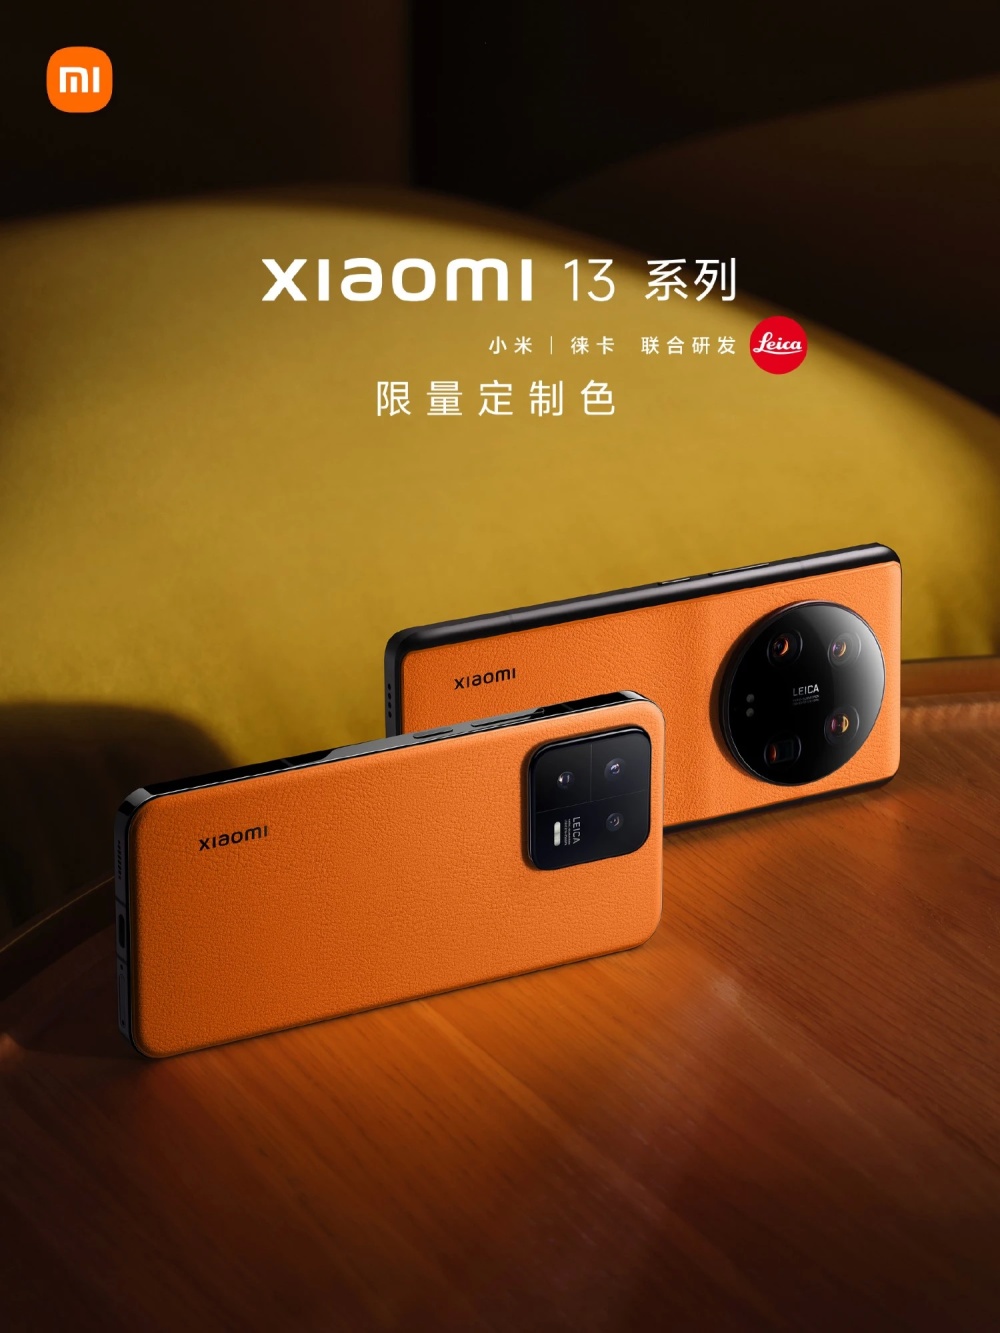 Базовый Xiaomi 13 тоже получил яркие расцветки в стиле 13 Ultra